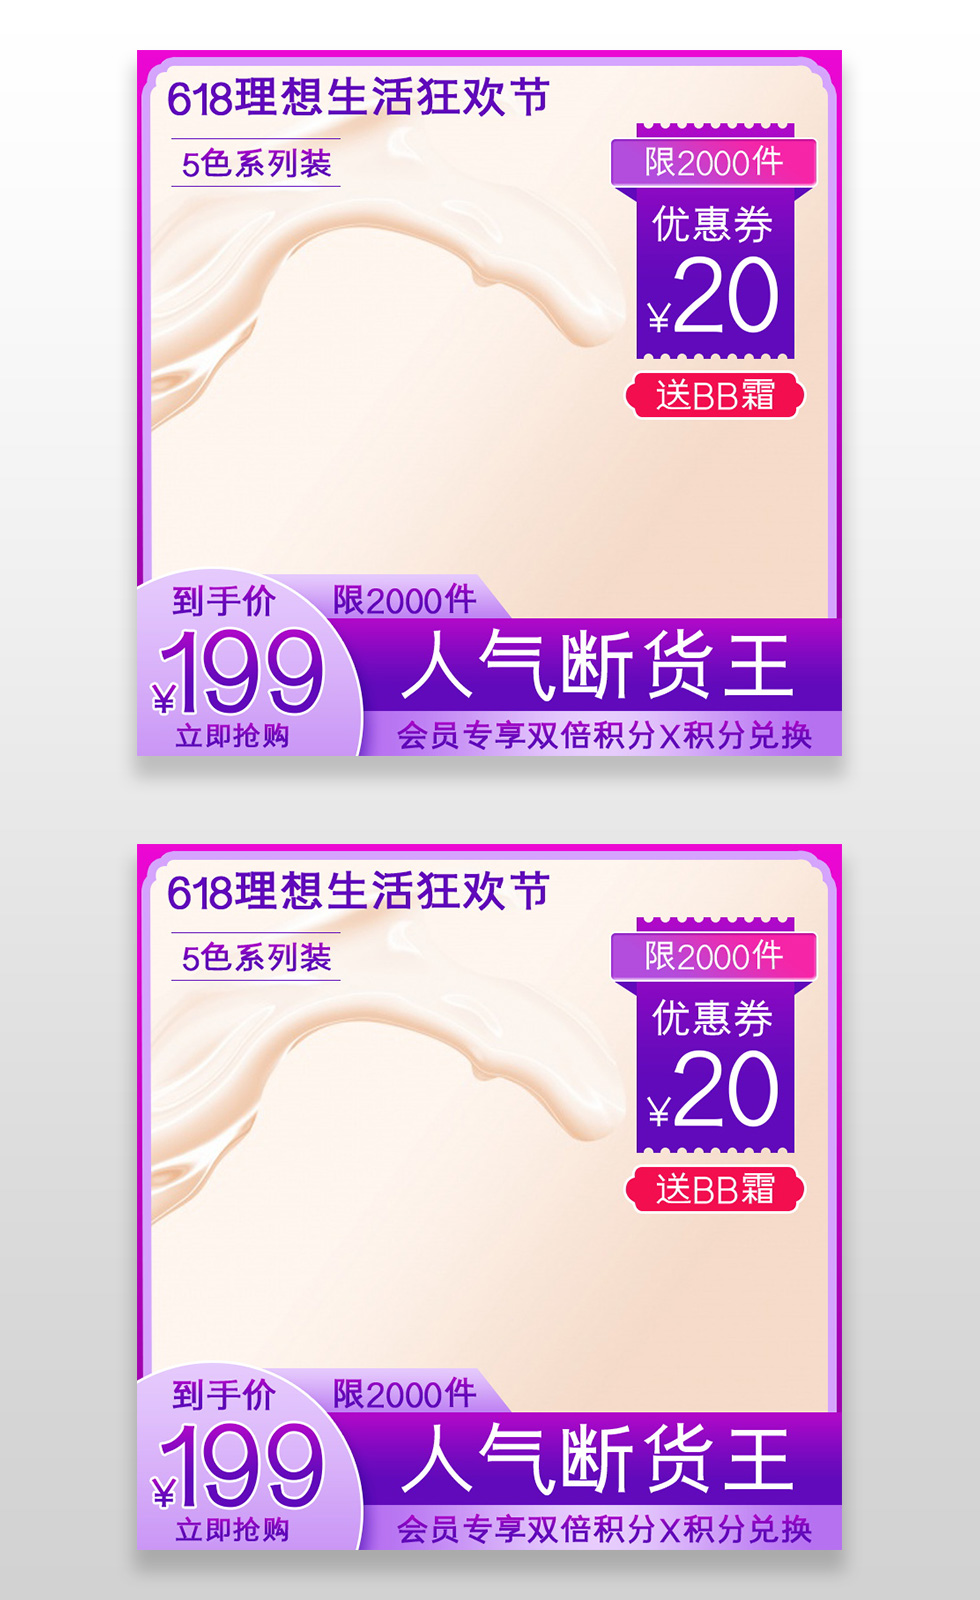 紫色梦幻简约电商洗护主图促销直通车洗护用品.JPG